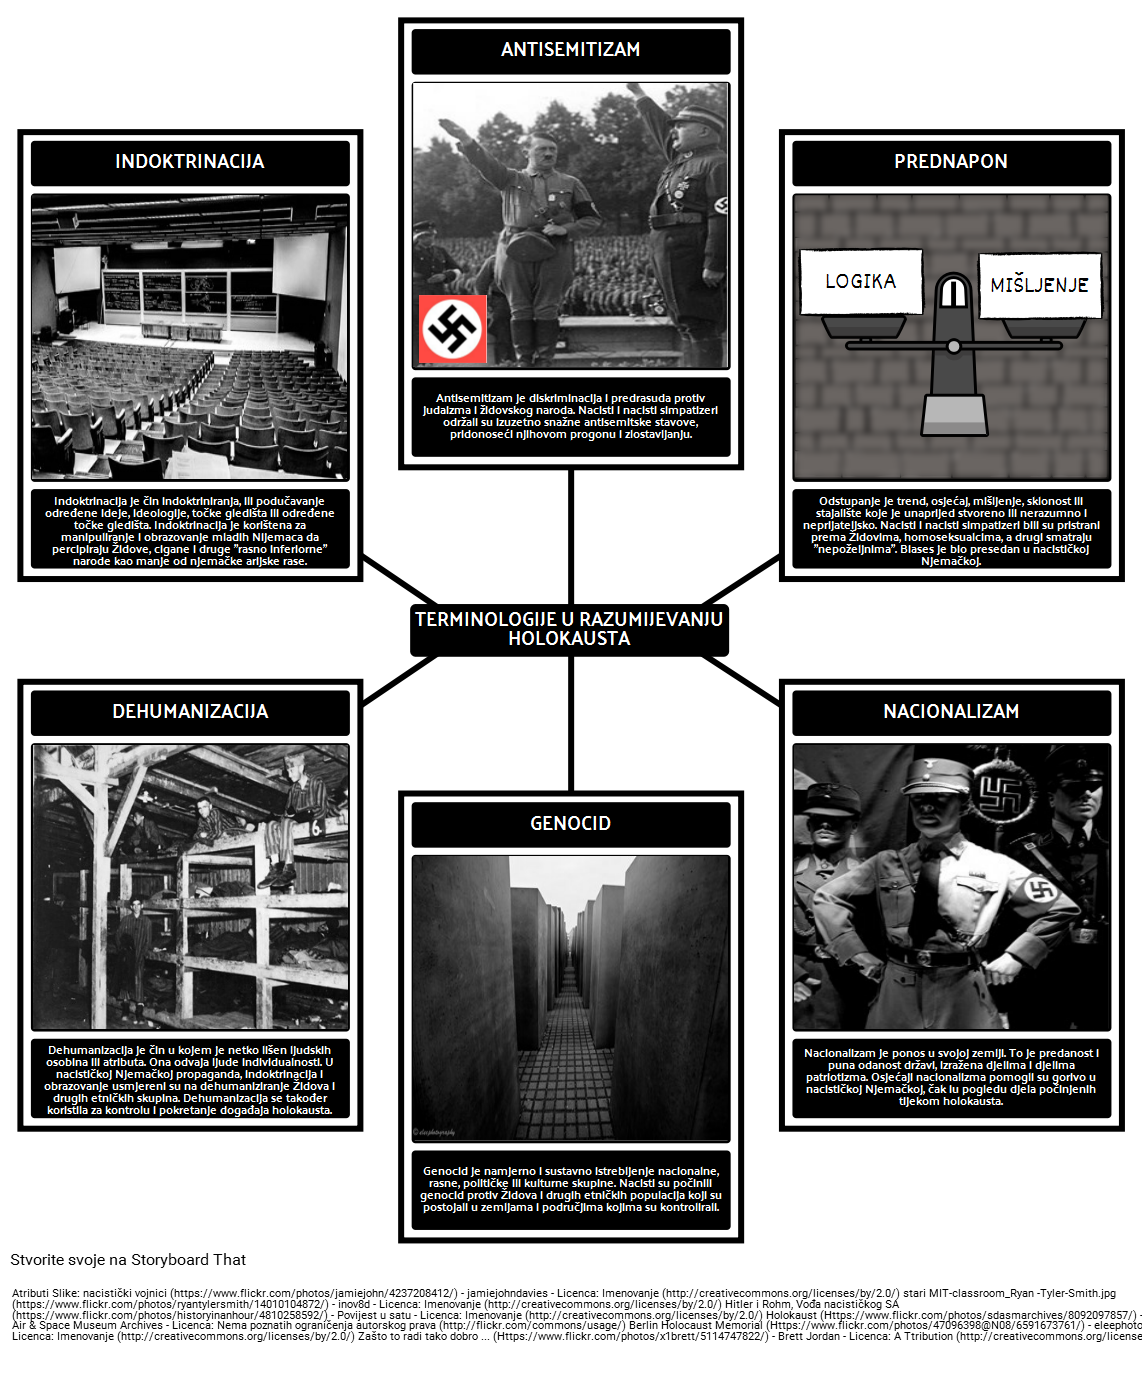 Povijest Holokausta - Terminologije u Razumijevanju Holokausta